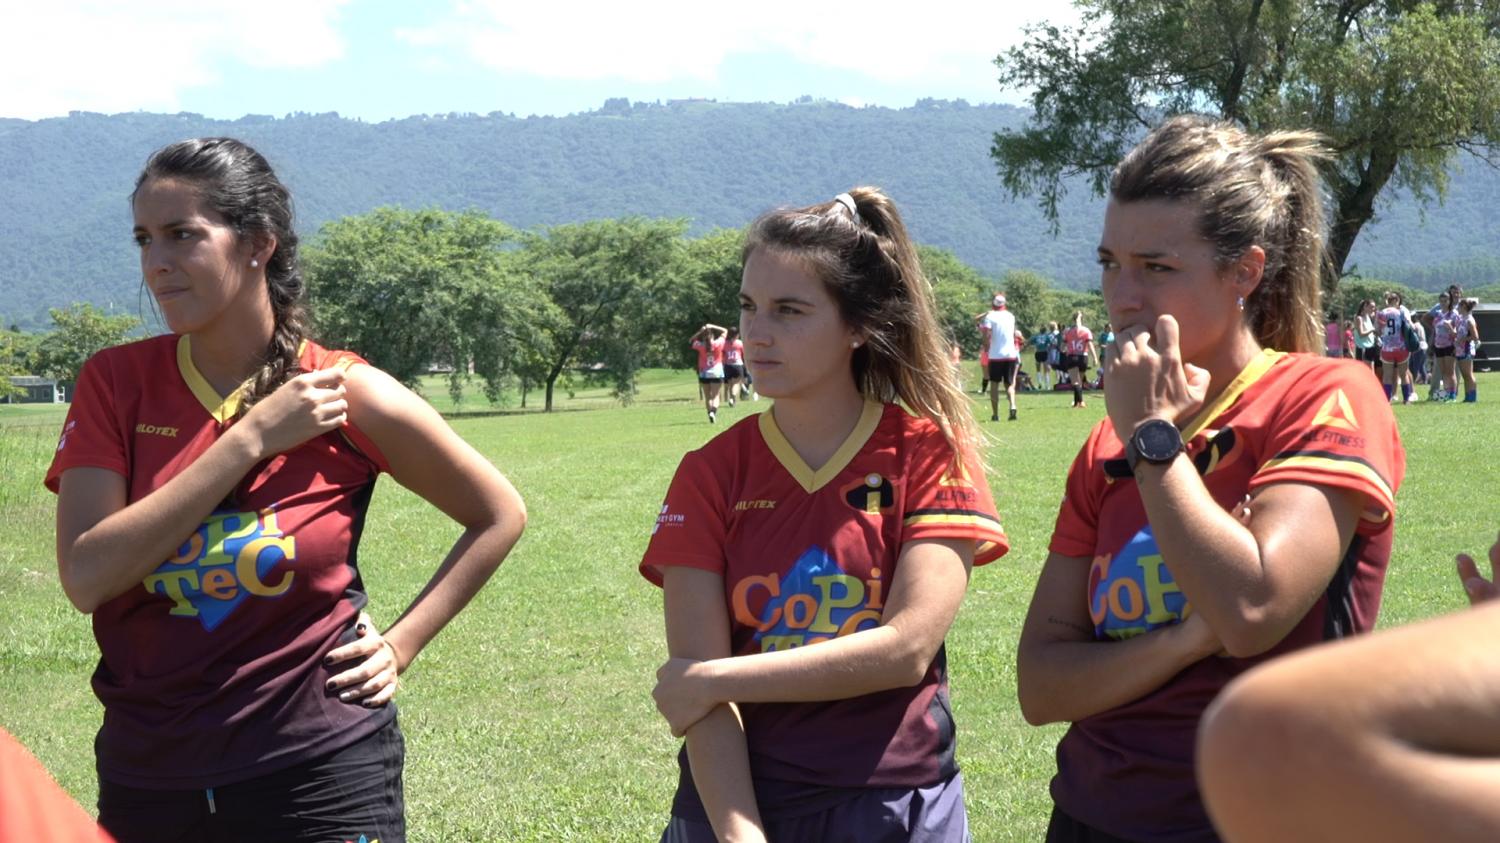 Las mujeres pisan fuerte en el fútbol tucumano